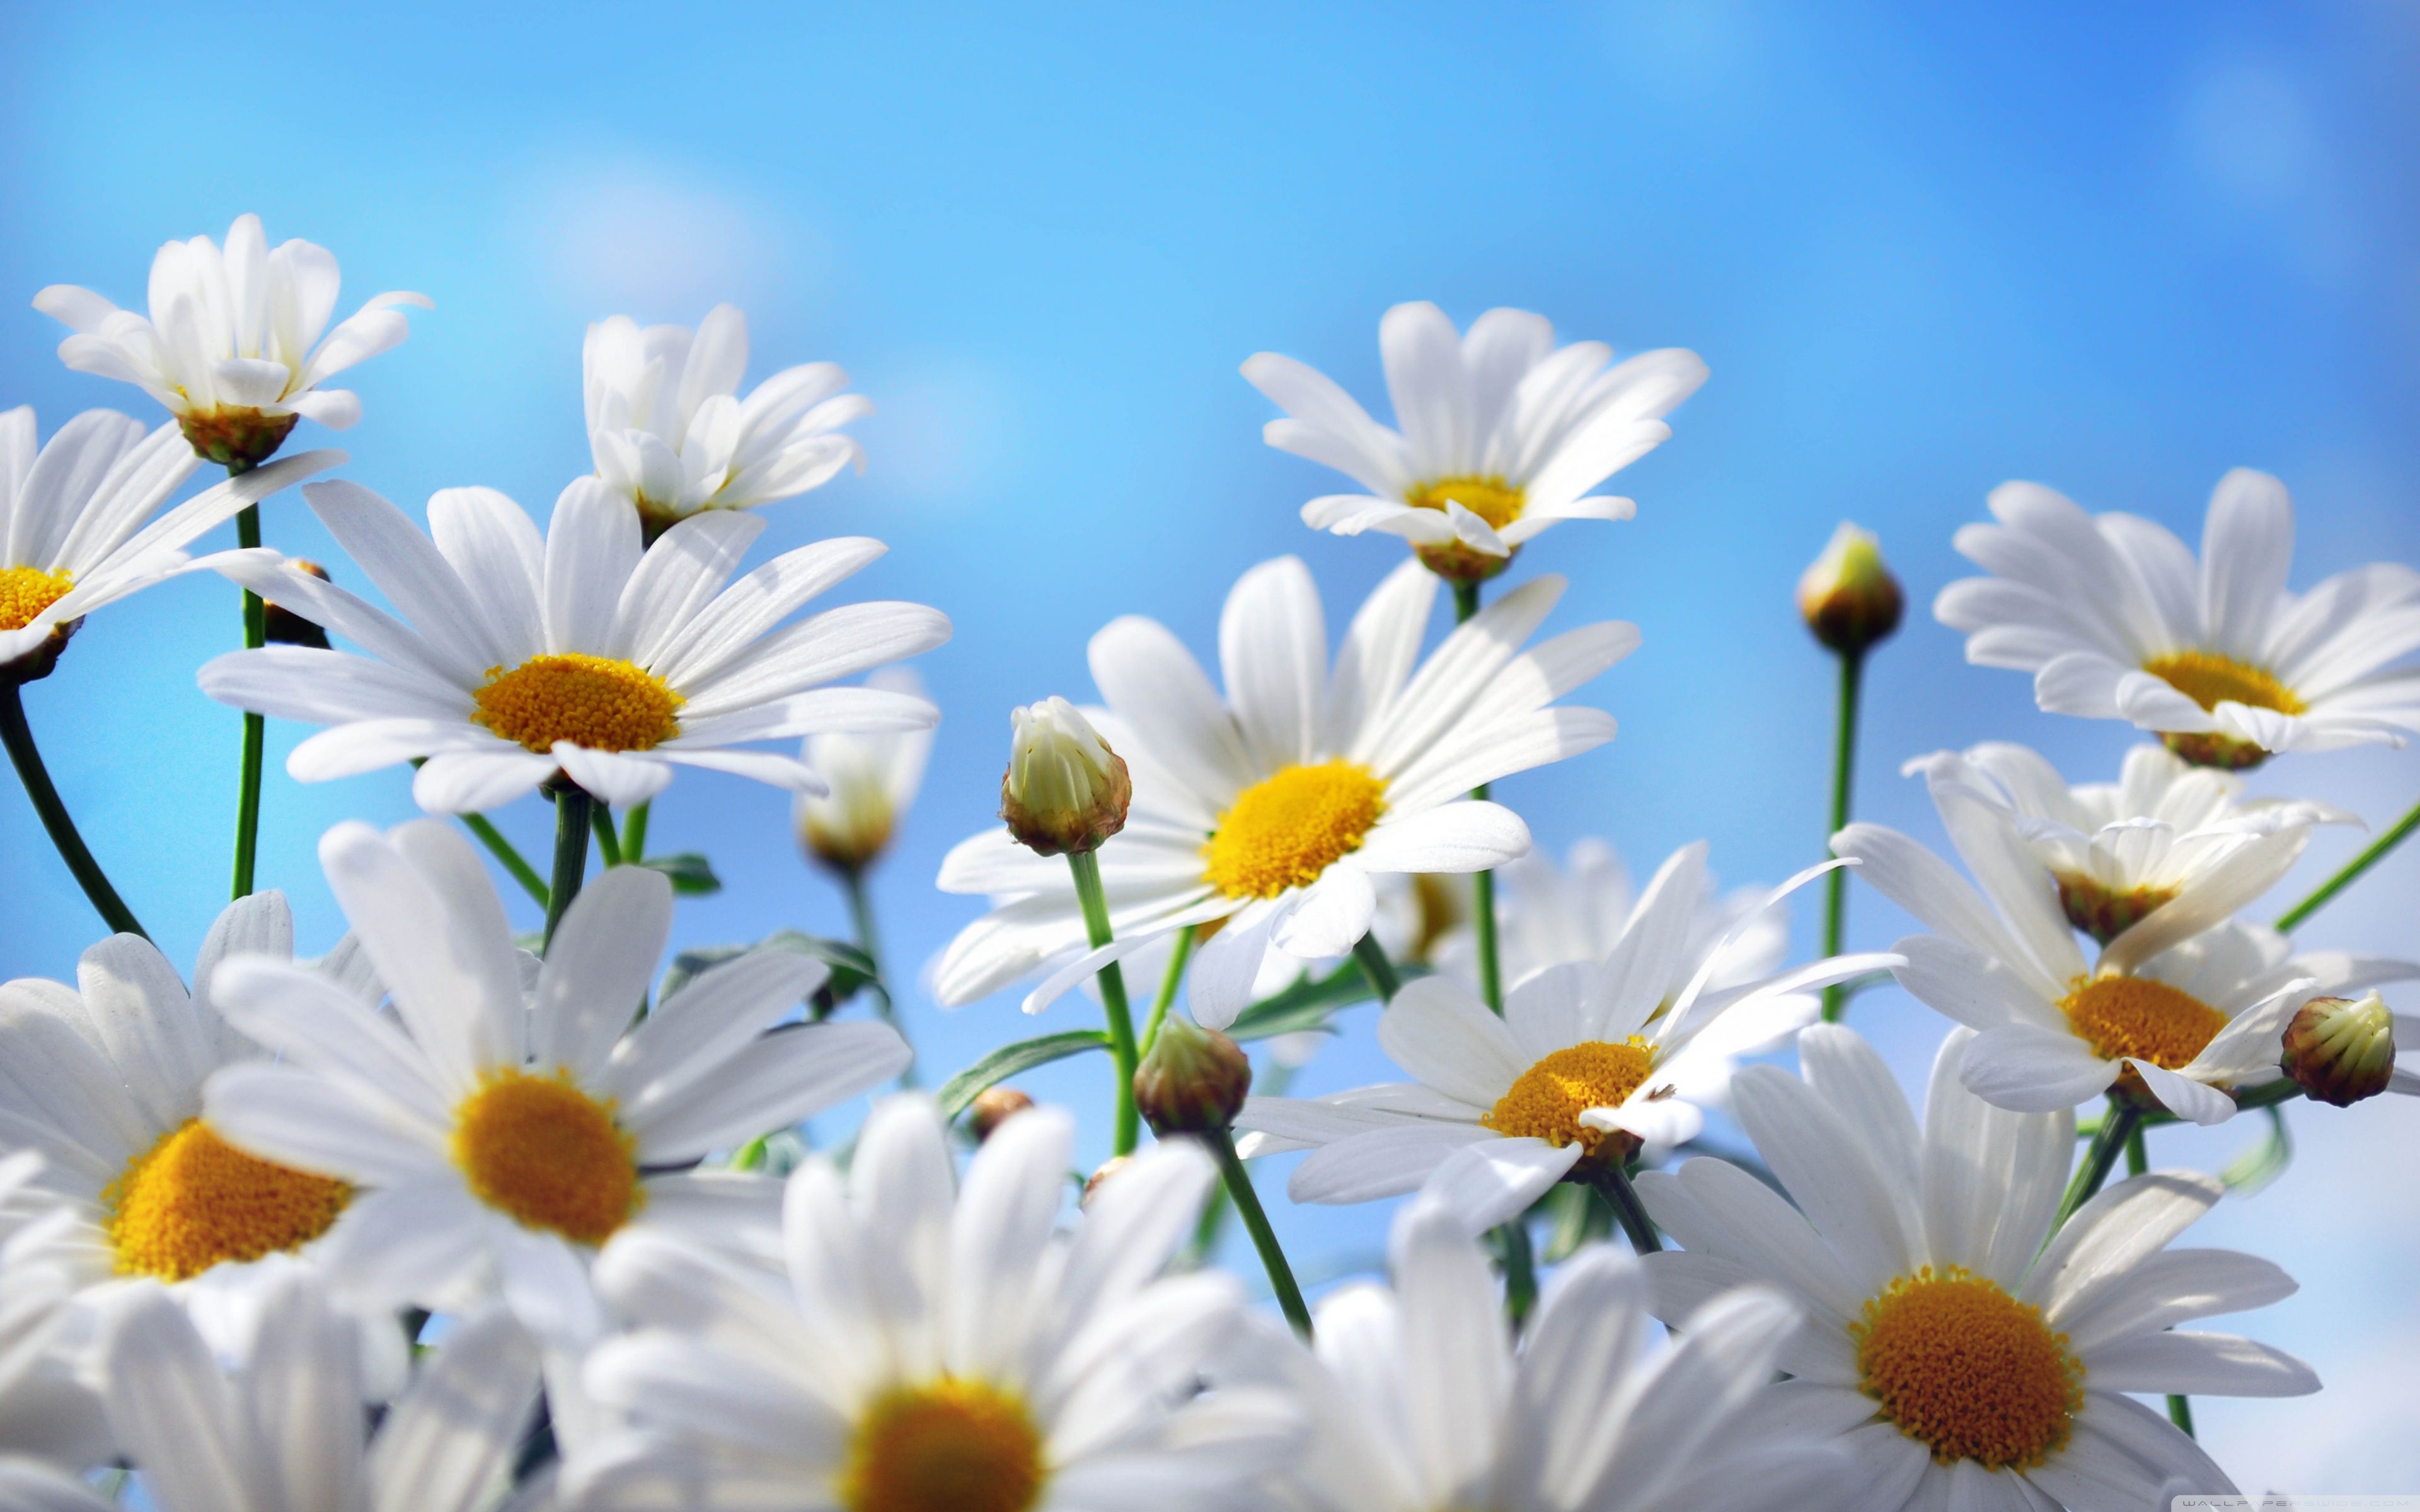 Daisy: Hoa cúc đang chờ đón bạn khám phá. Trong kho ảnh của chúng tôi, bạn có thể tìm thấy những bức ảnh về hoa cúc với đủ các loại màu sắc và kiểu dáng. Hãy cảm nhận sự thanh khiết của hoa cúc và tận hưởng cảm giác thư giãn khi đắm chìm trong kho ảnh về loại hoa này.